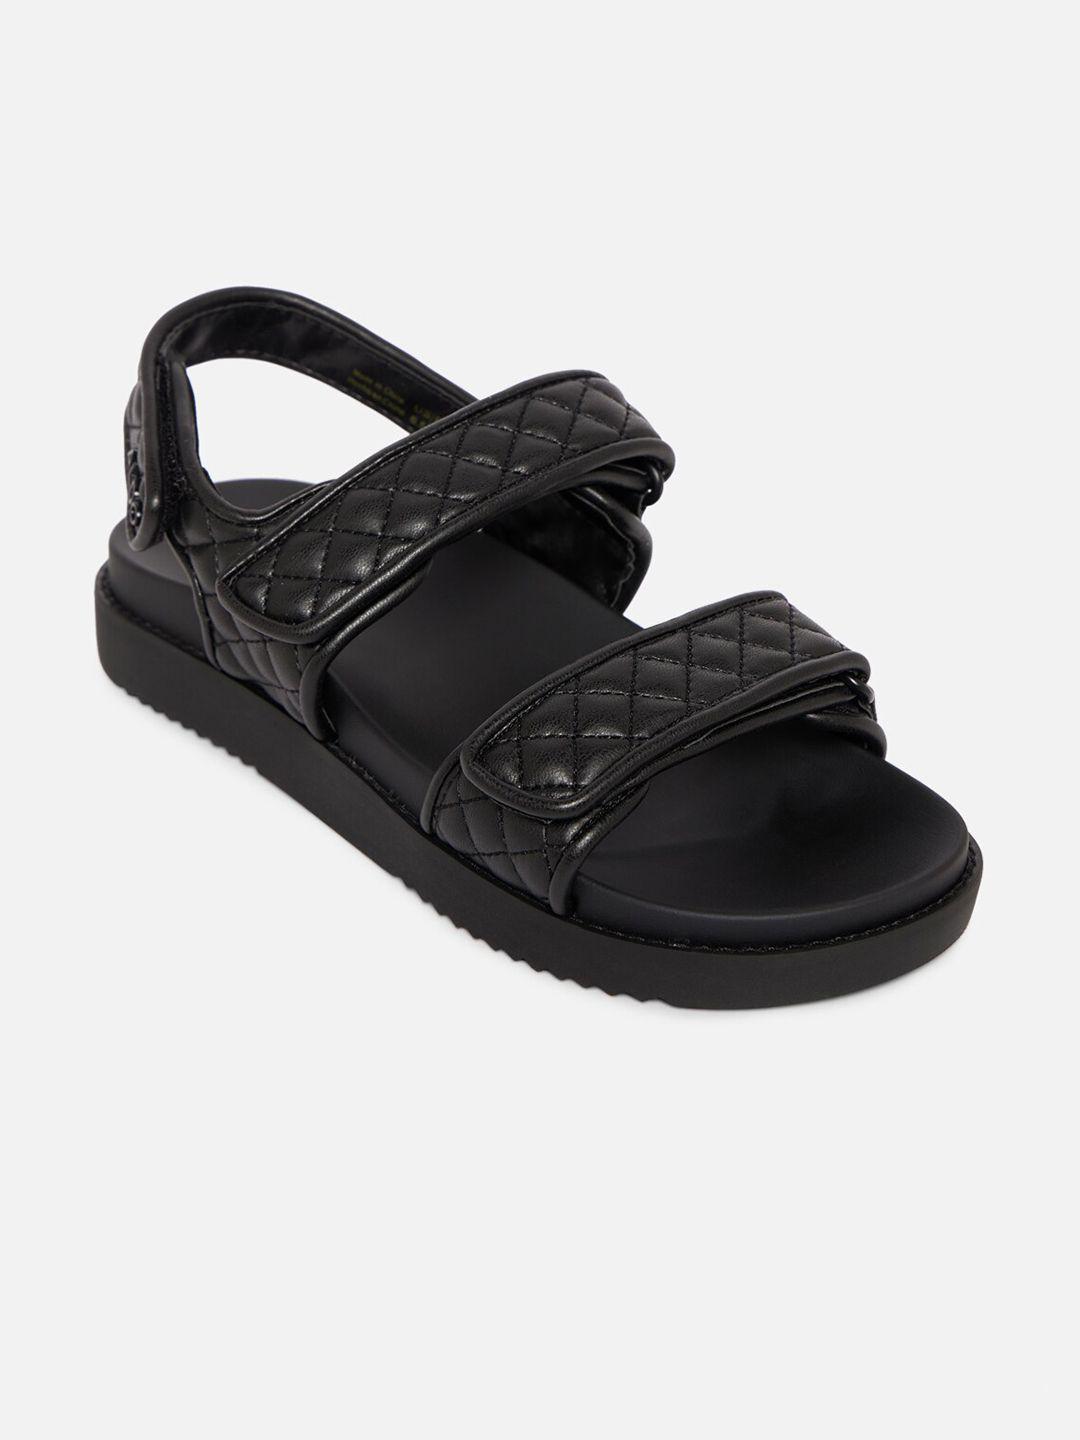 aldo-women-black-comfort-sandals